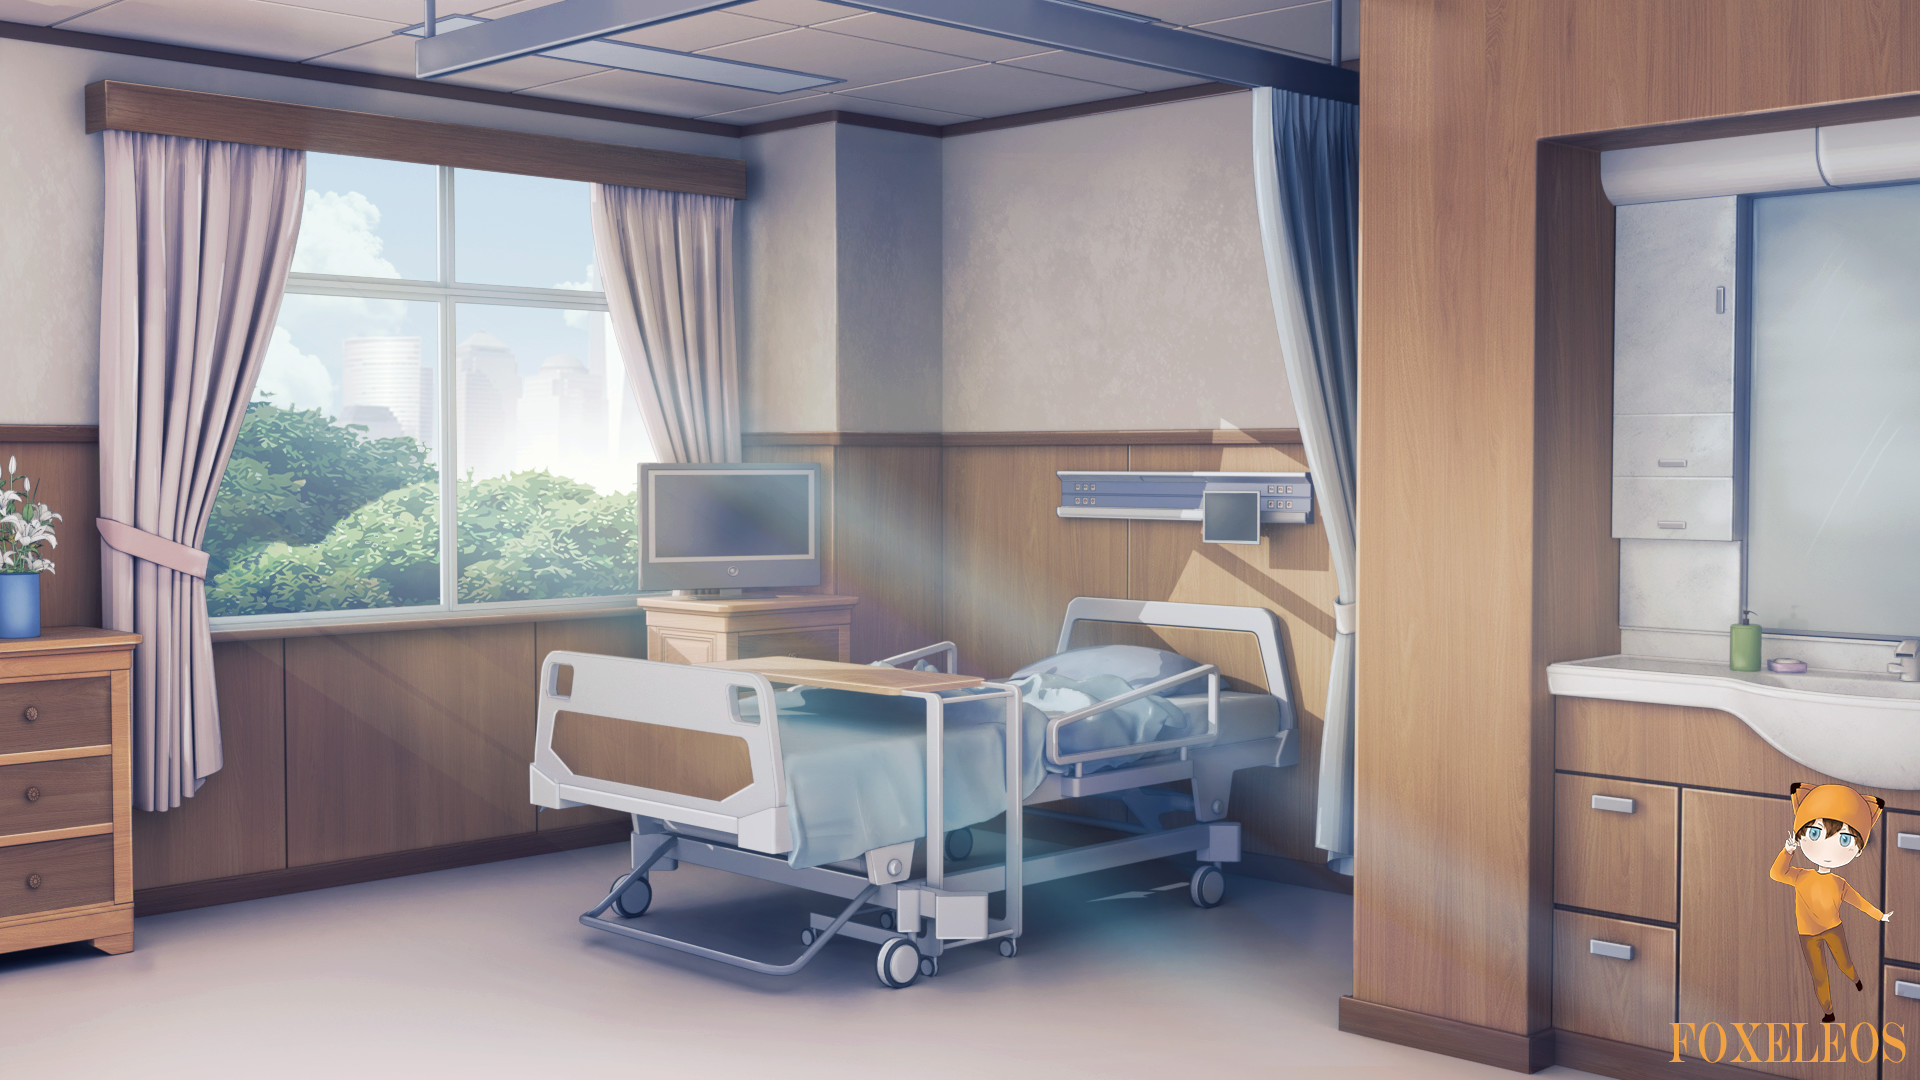 Hospital anime background